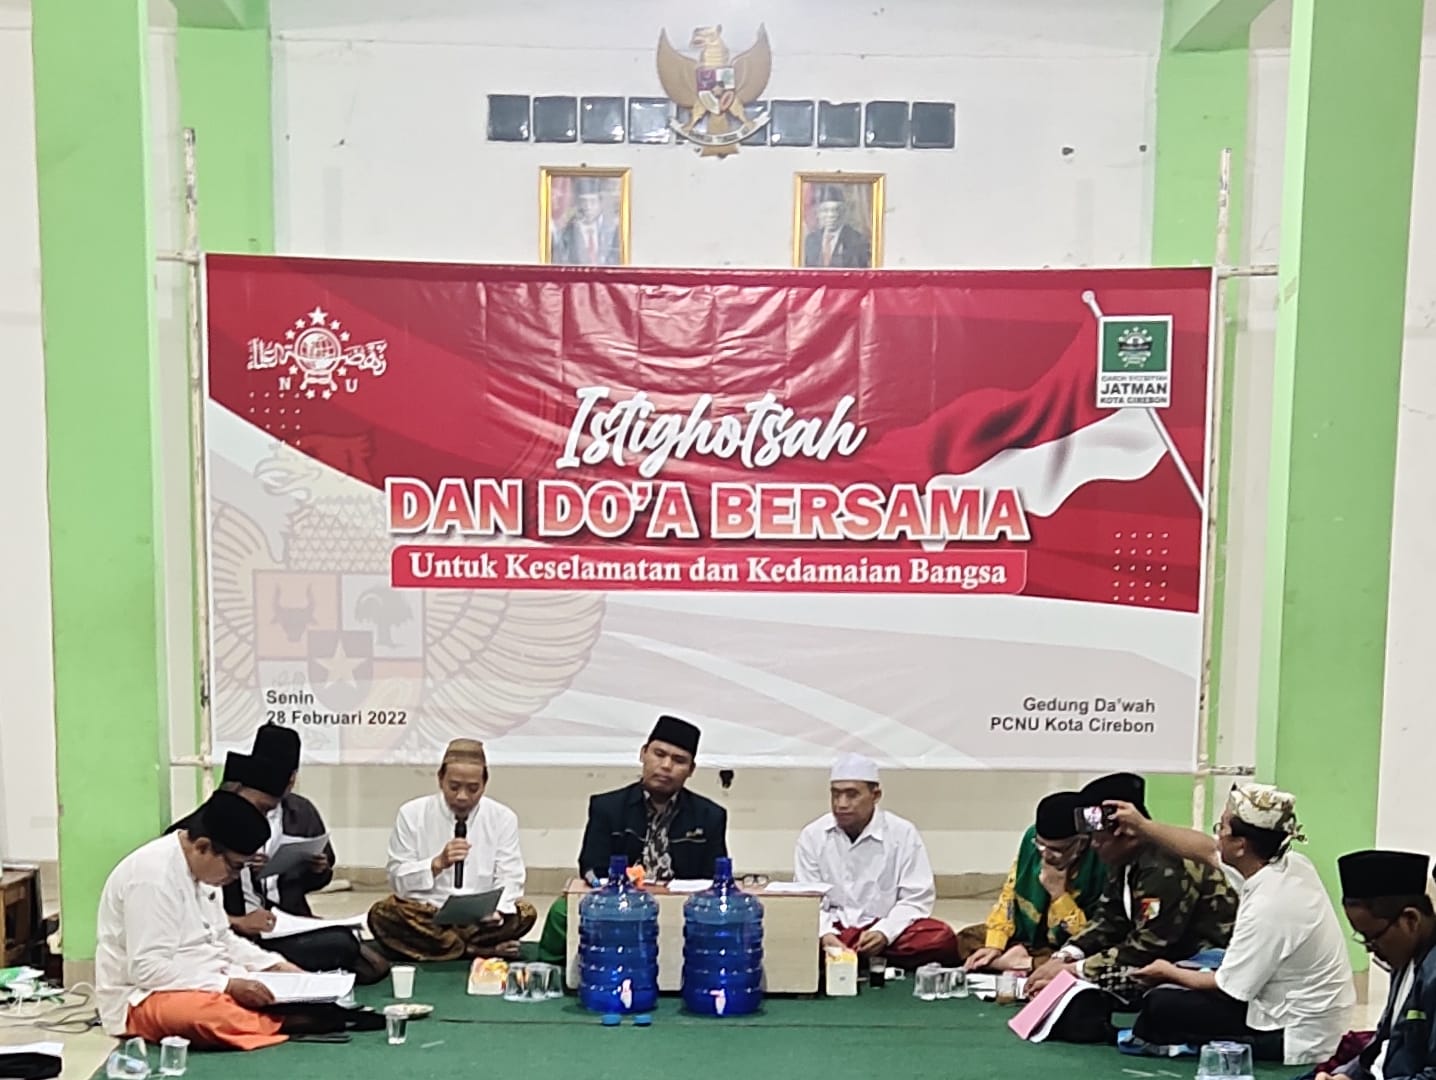 JATMAN Kota Cirebon Gelar Istighosah dan Do’a Bersama untuk Kedamaian Bangsa